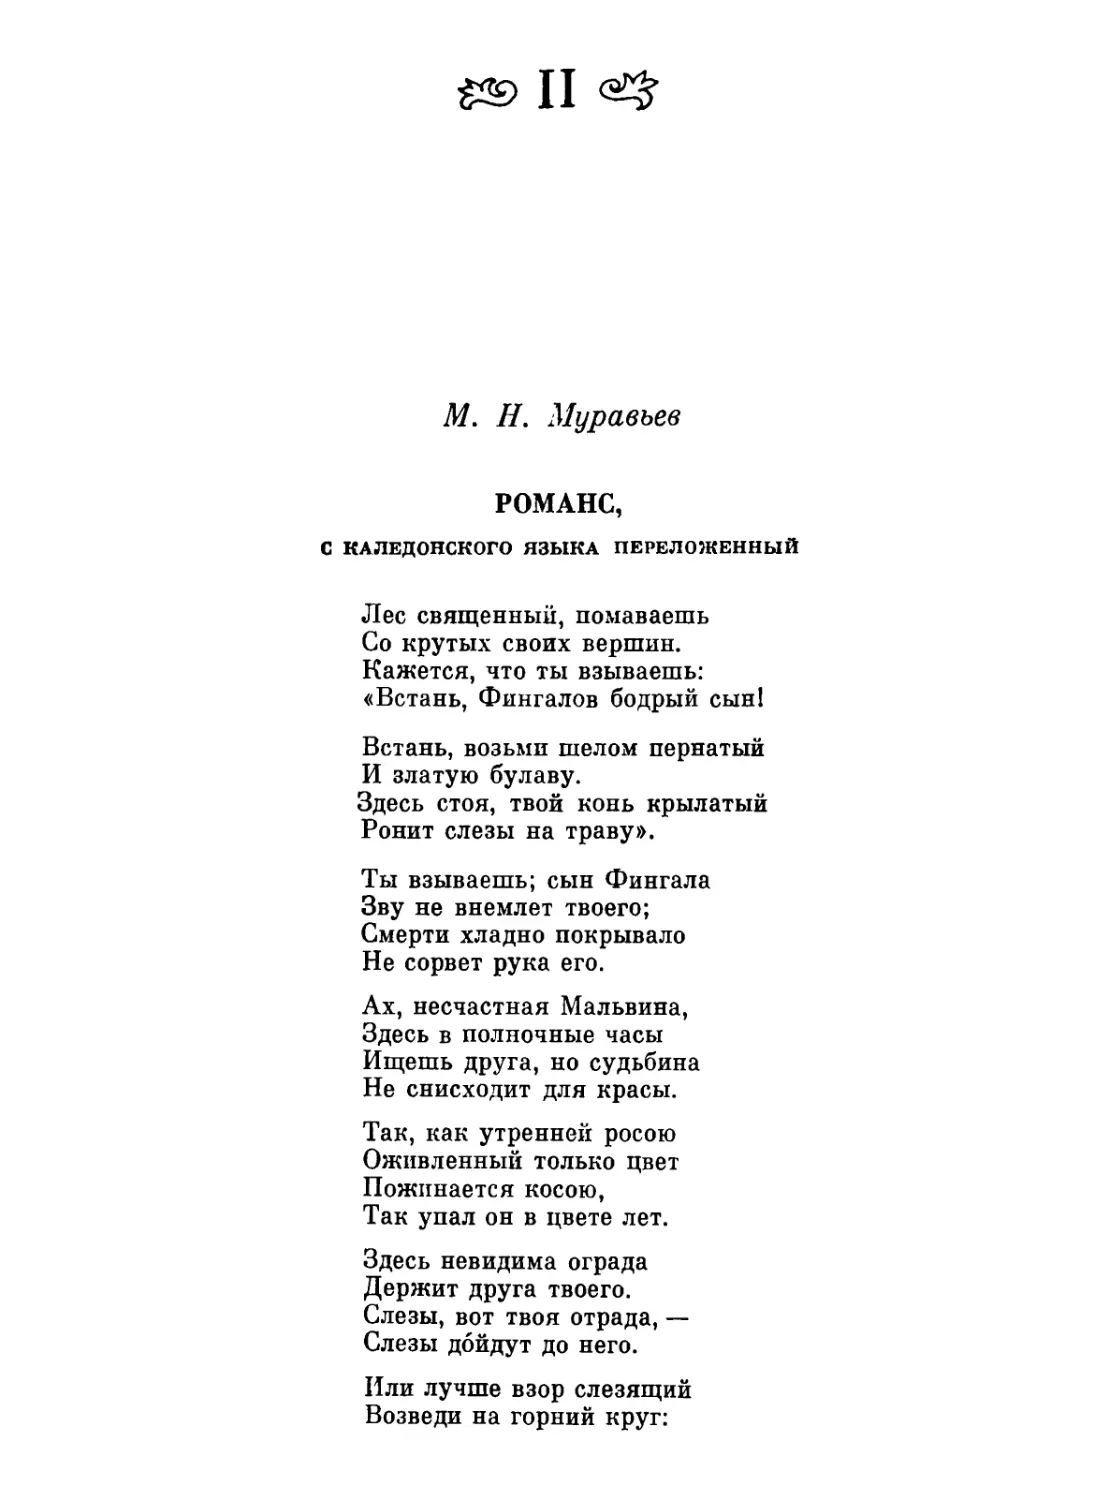 Оссиан в русской литературе. II